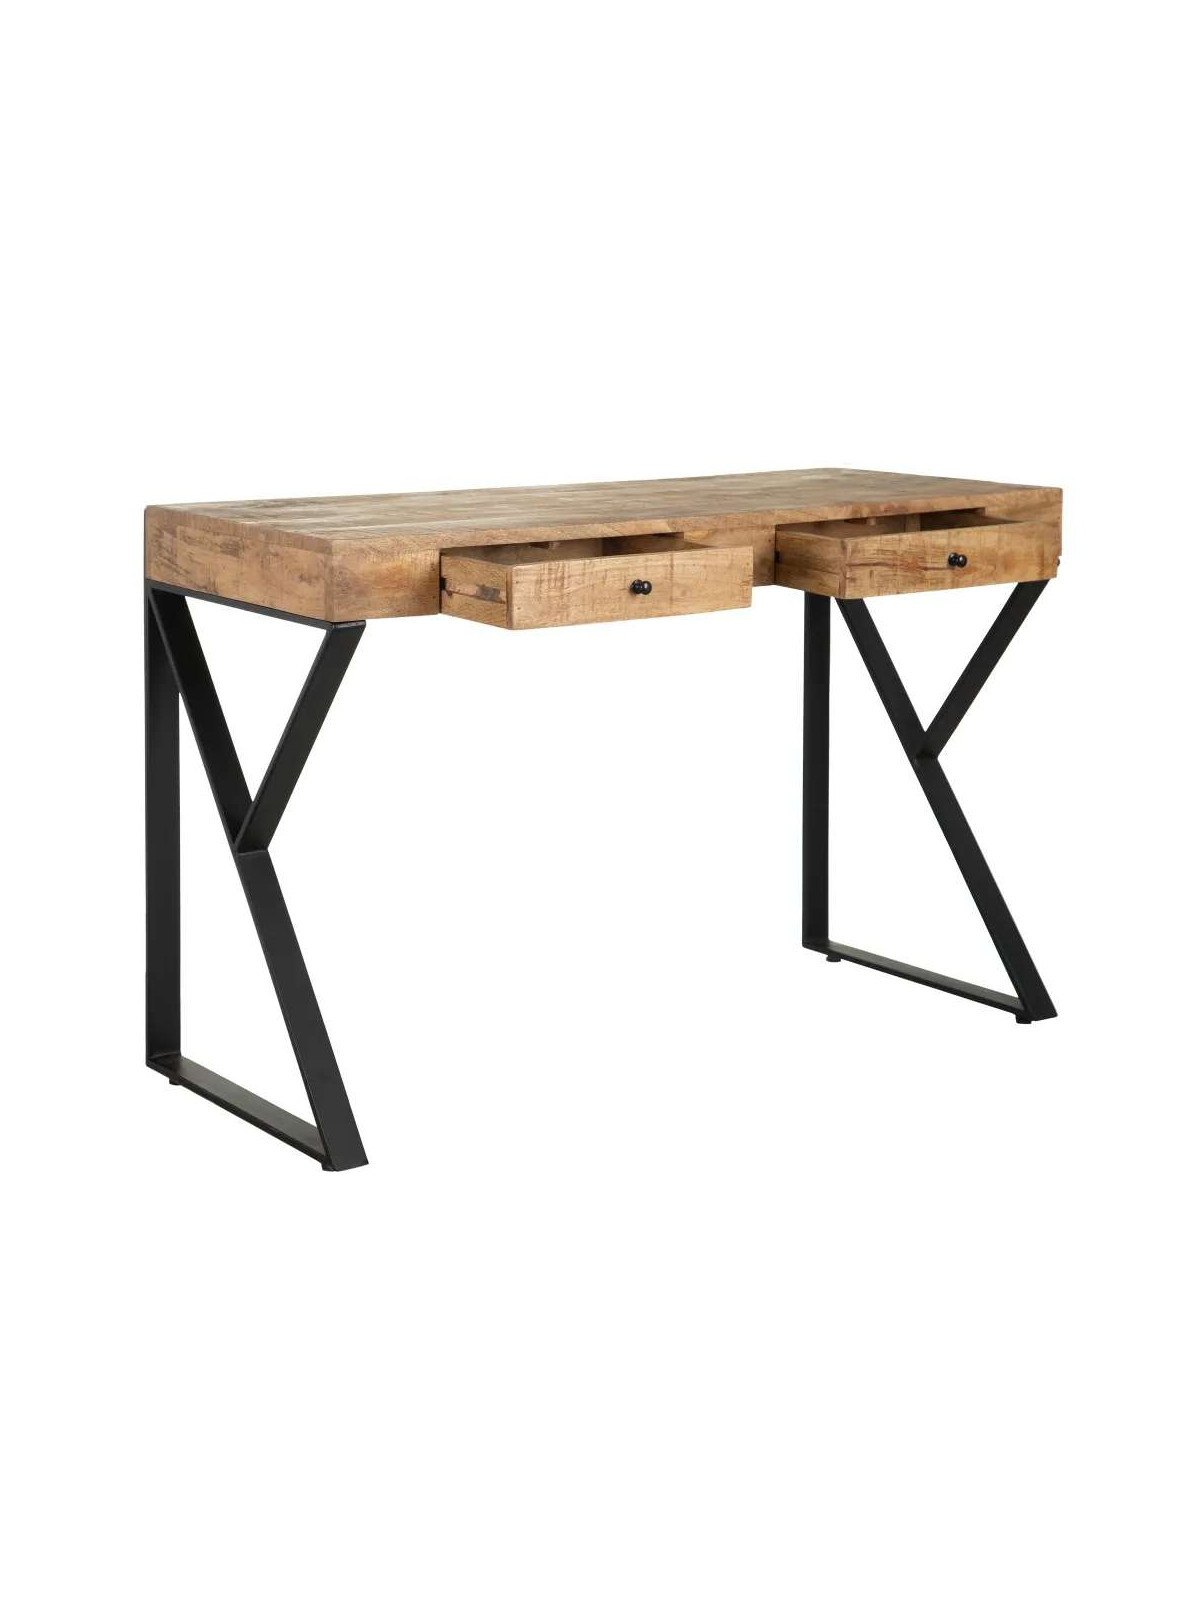 Bureau design en bois de manguier et métal noir 2 tiroirs - COROT